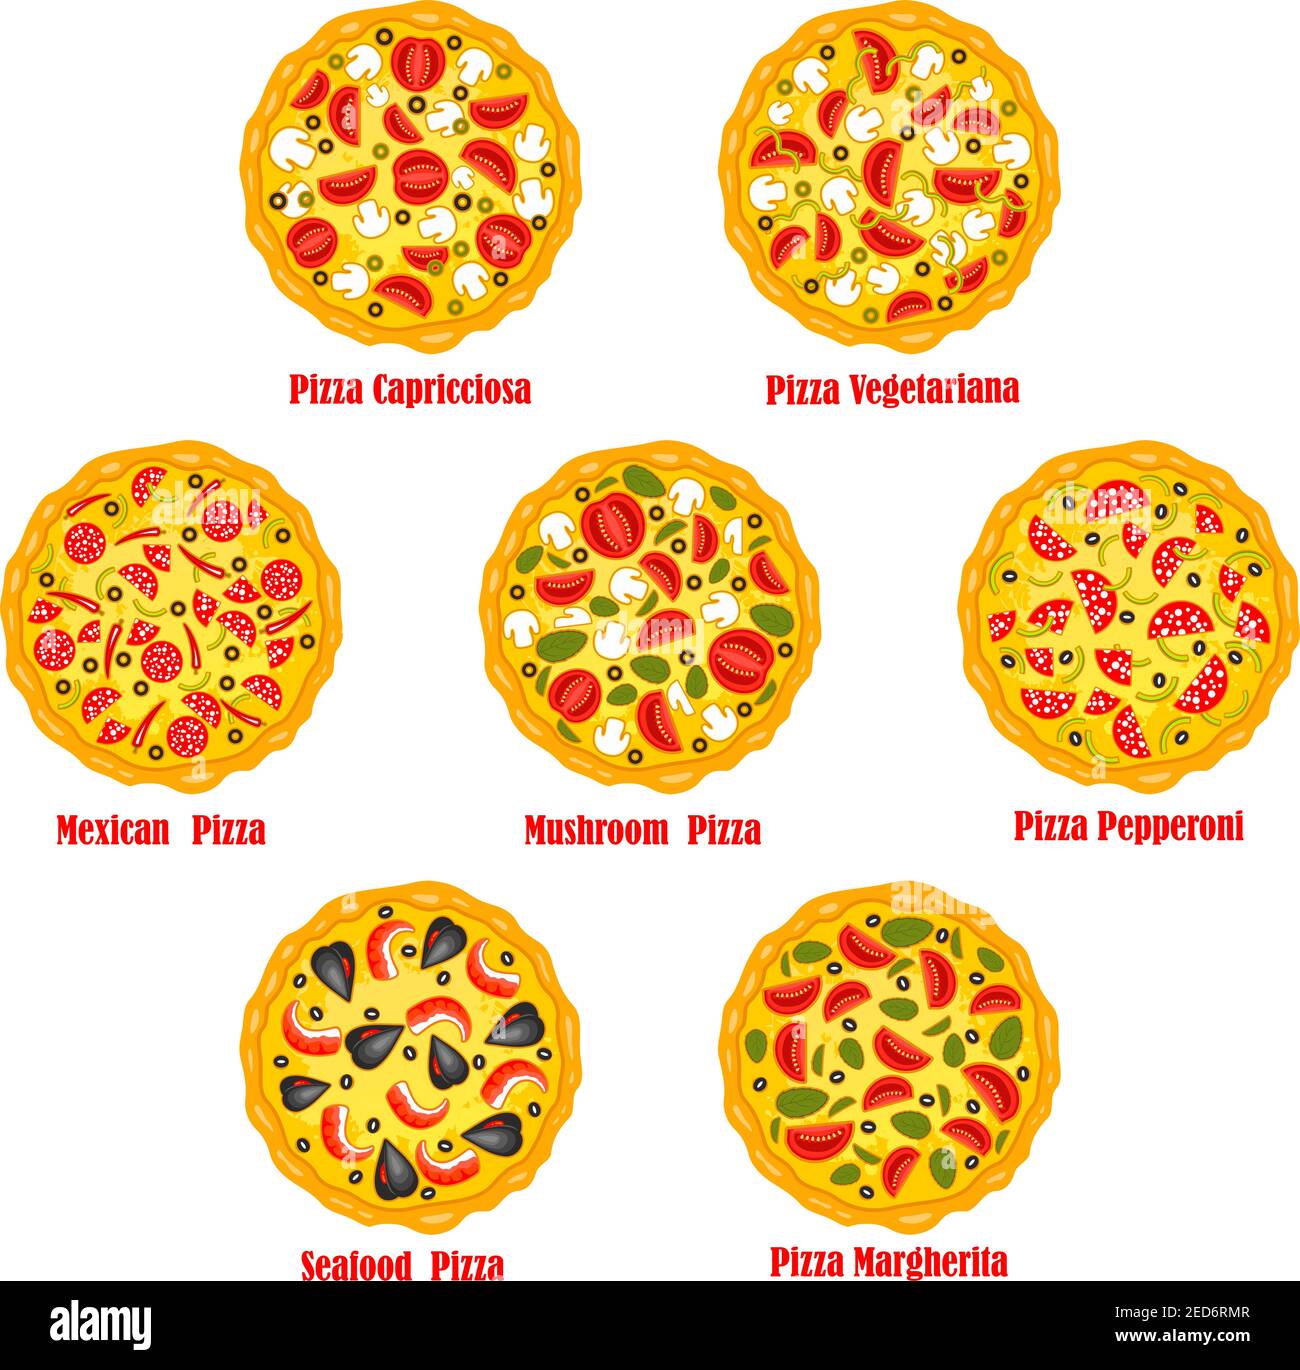 технологическая карта пепперони пицца фото 26